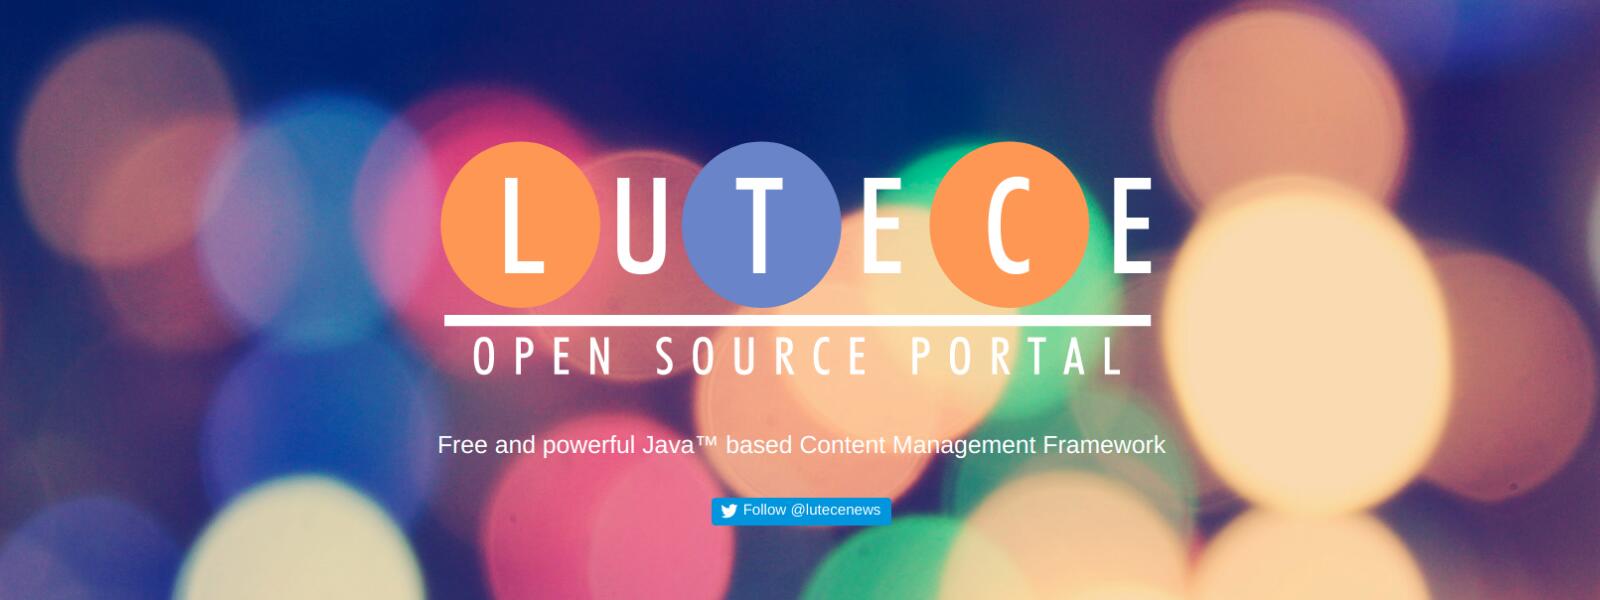 Lutece, plataforma ciudadana de software libre, se expande en Estados Unidos